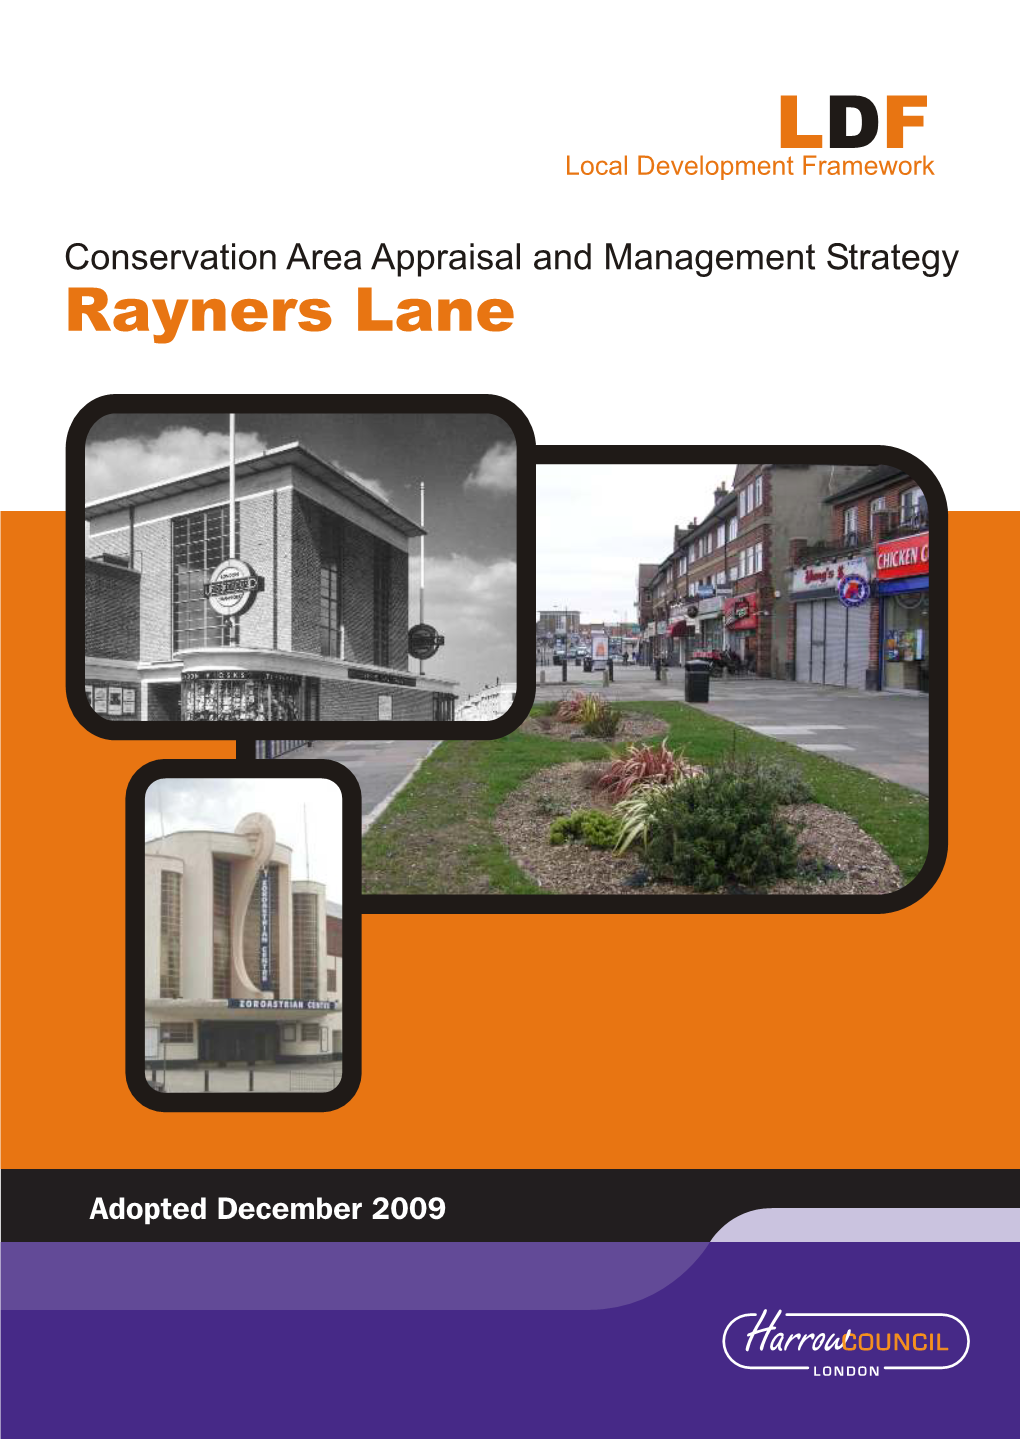 Pinner Rayners Lane